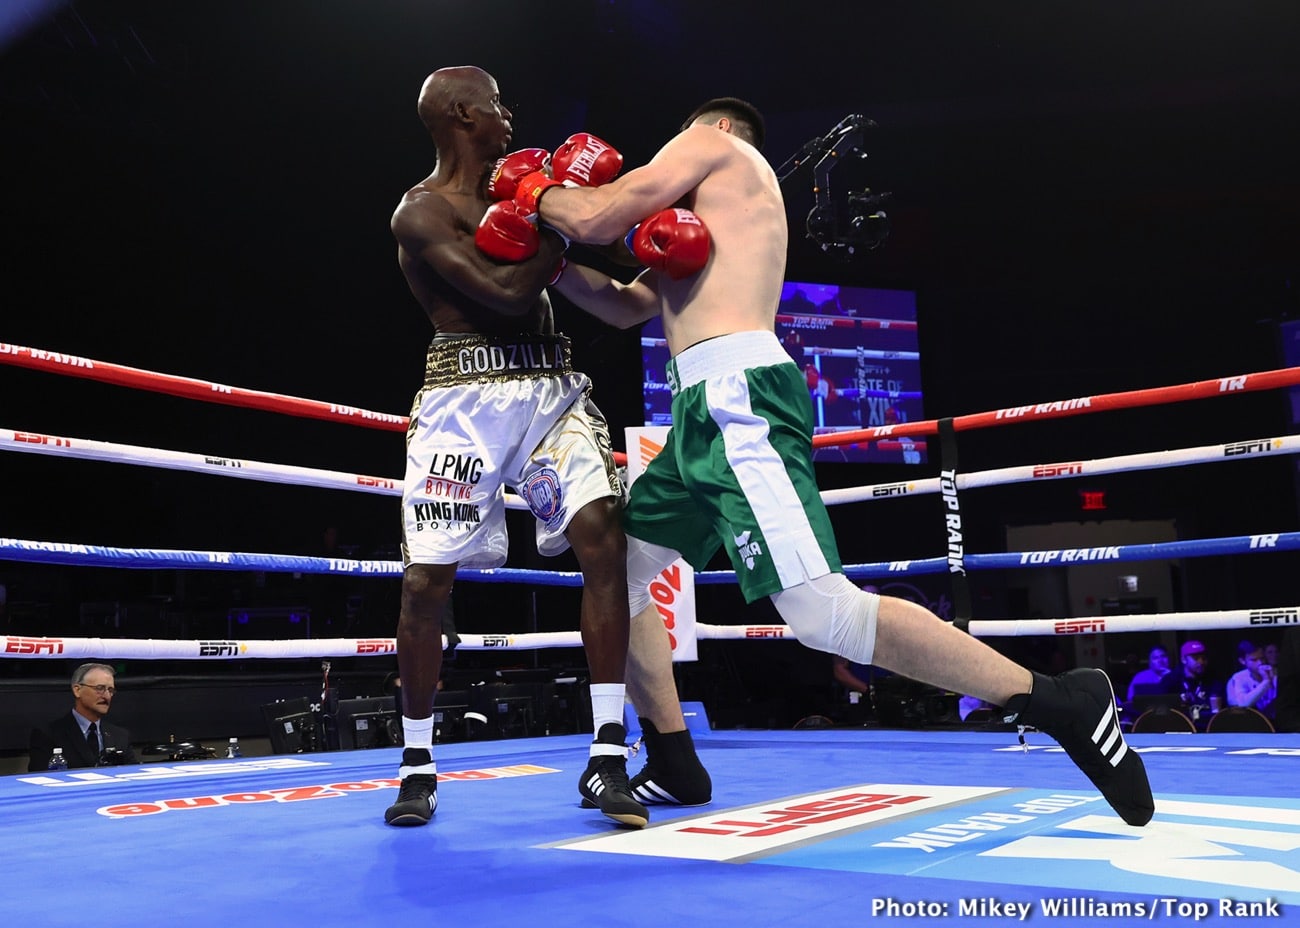 Jared Anderson defeats Rudenko & Efe Ajagba beats Kossobutskiy - Boxing results